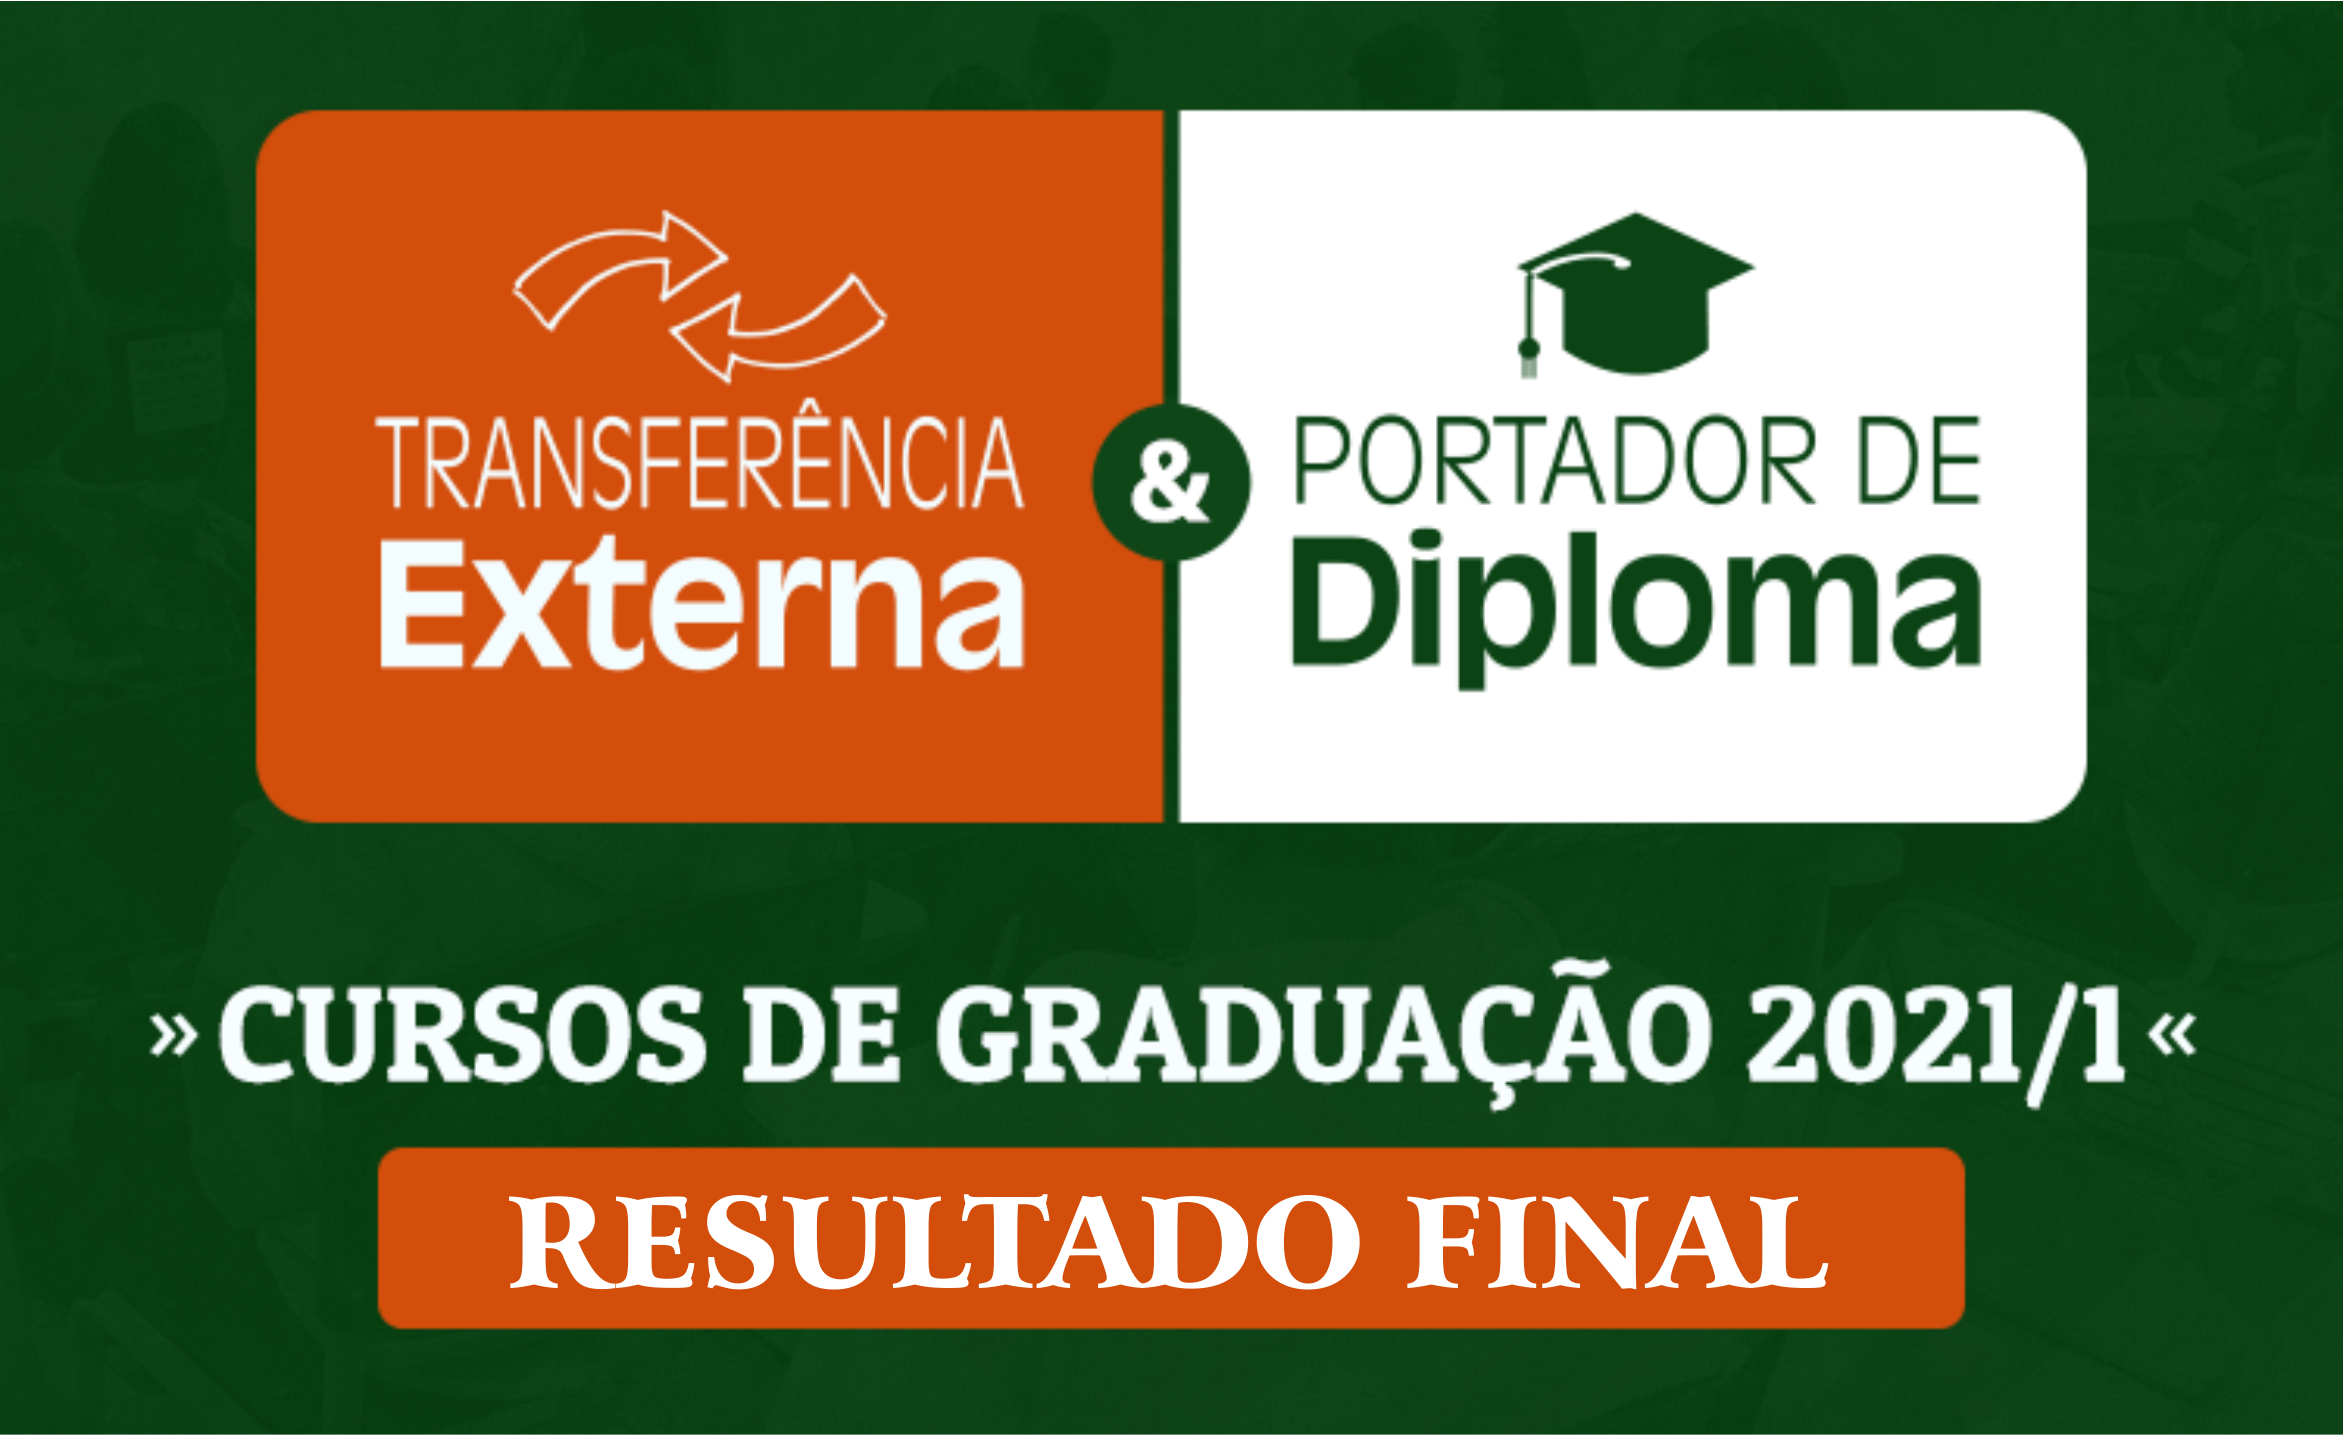 AADestaque---Graduao-2021-1---Portador-de-Diploma-e-Transferncia-Externa_resultado_final.png - 1.02 MB